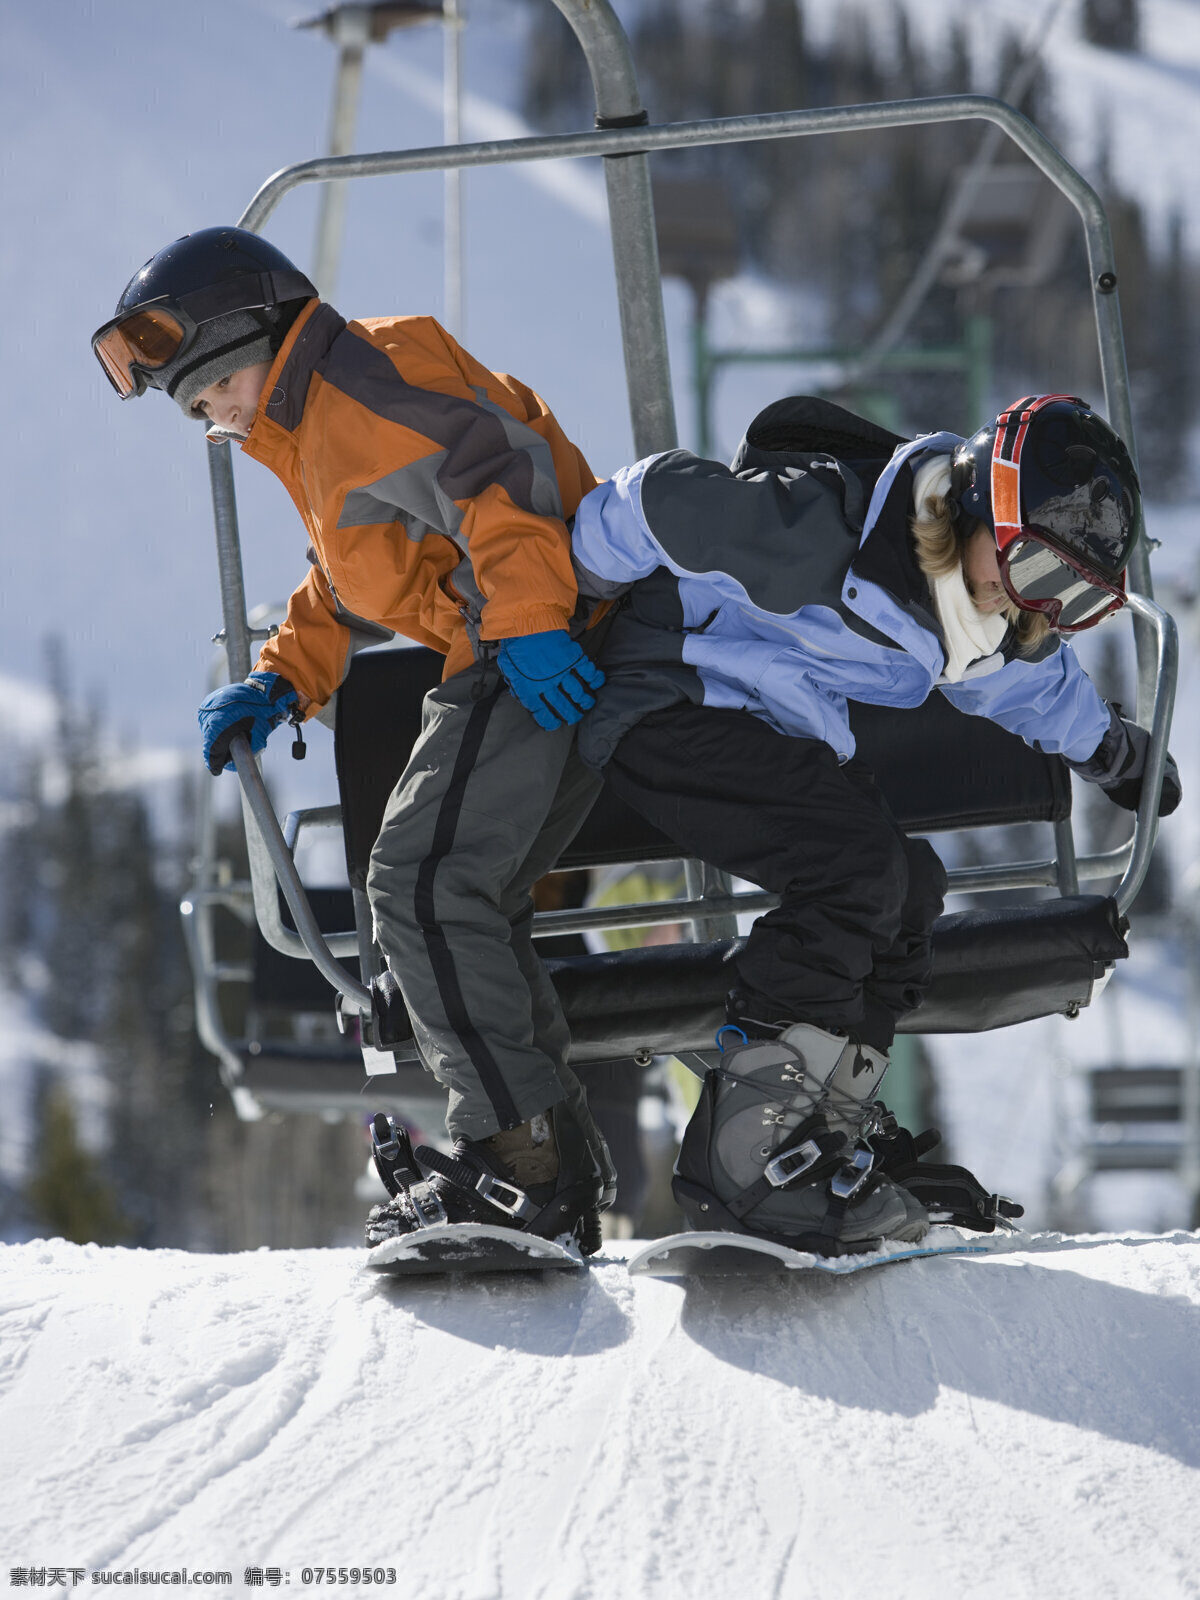 准备 滑雪 姐弟 滑雪场 滑雪运动 滑雪服 滑雪工具 滑雪图片 生活百科